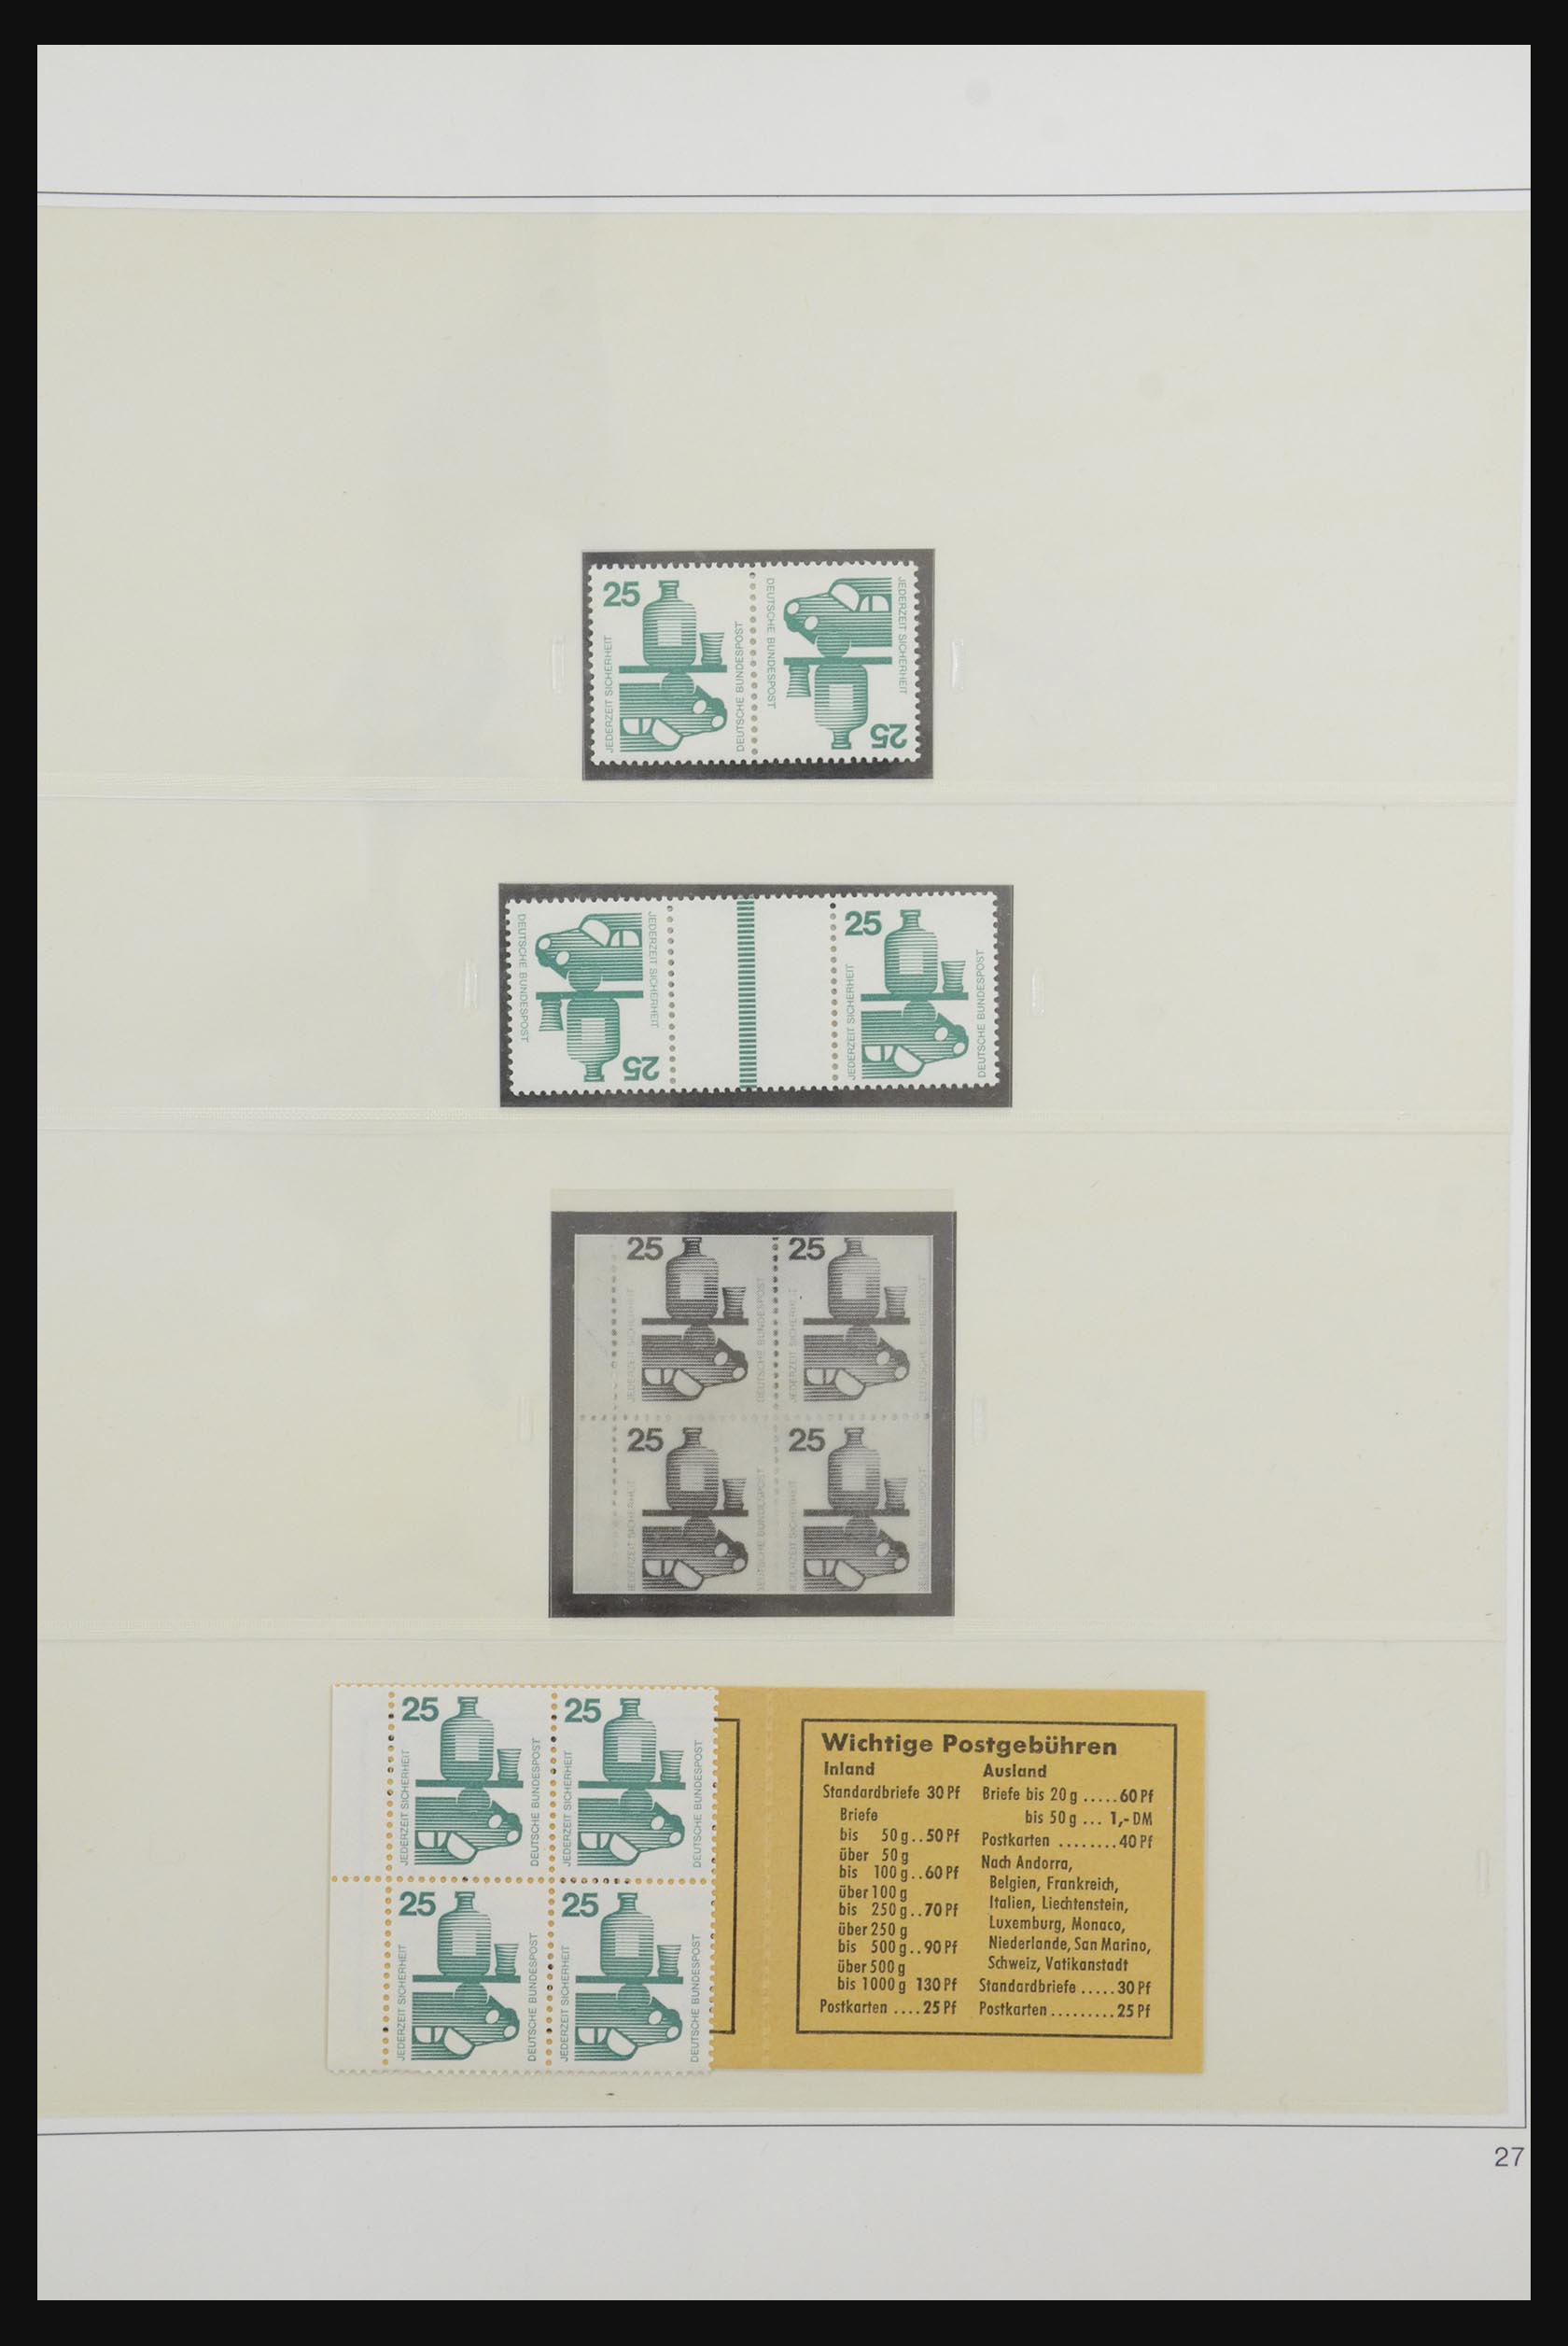 31842 037 - 31842 Bundespost combinaties 1951-2003.